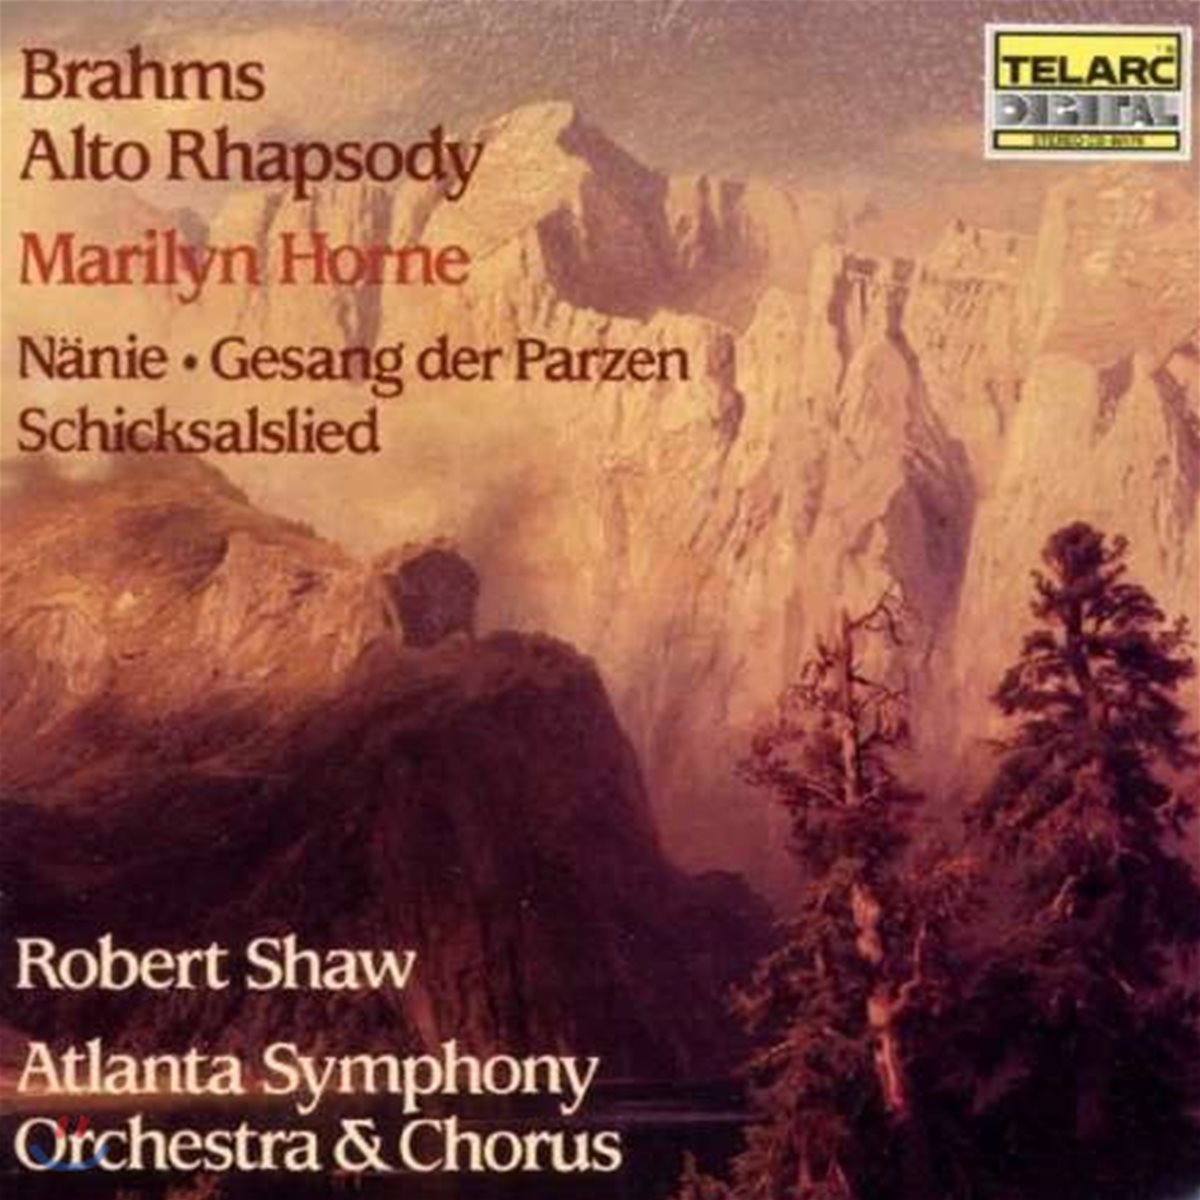 Robert Shaw 브람스: 알토 랩소디, 운명의 여신의 노래, 운명 (Brahms: Alto Rhapsody, Nanie, Gesang der Parzen, Schicksalslied)